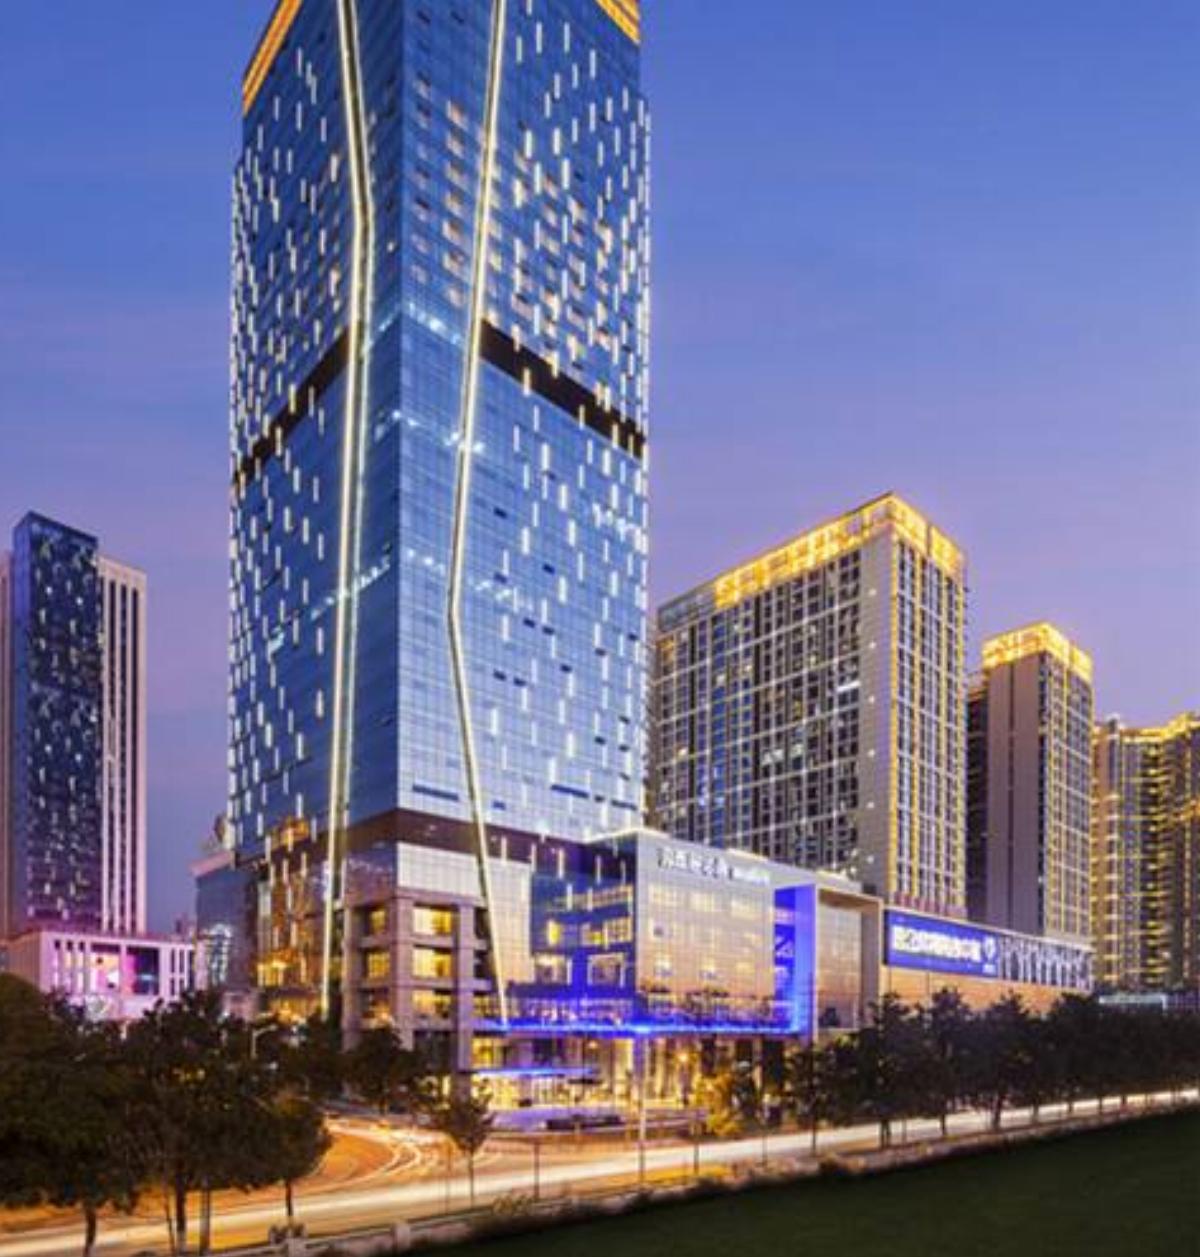 Hilton Zhuzhou Hotel Zhuzhou China